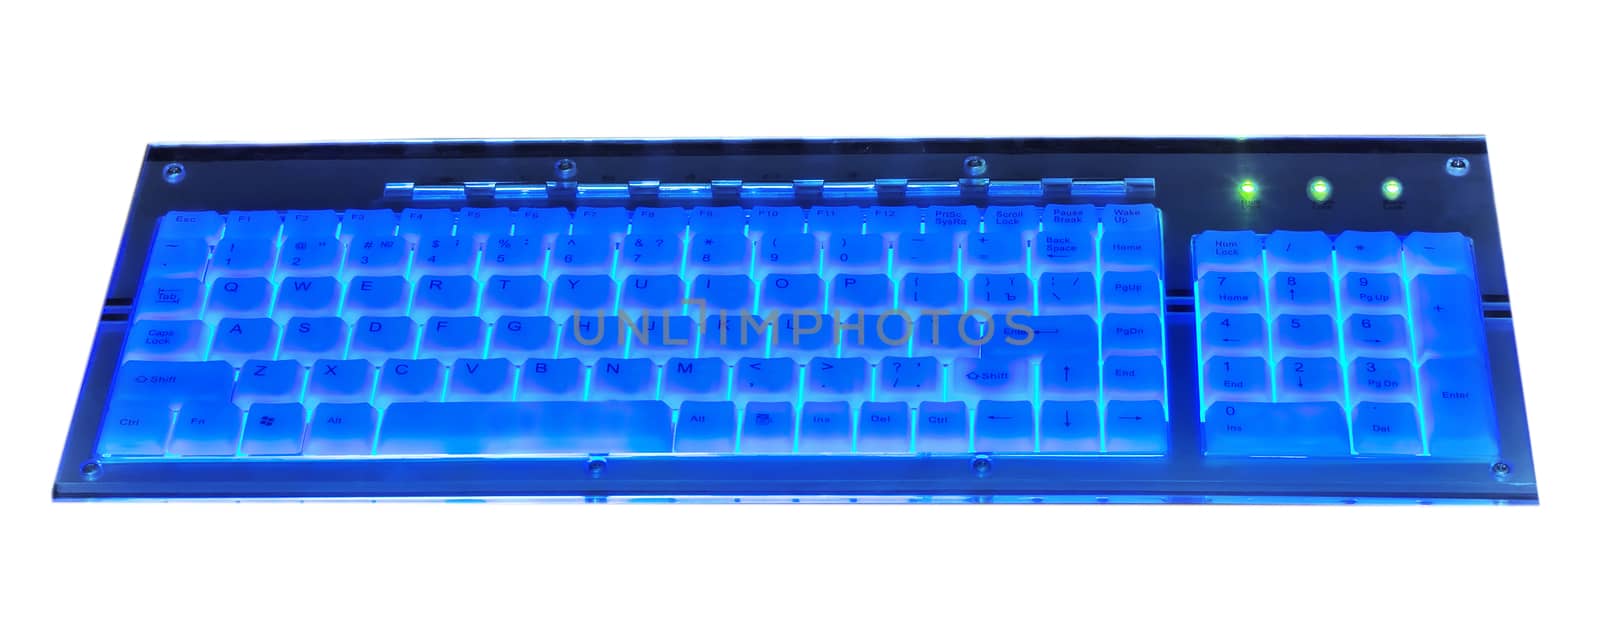 Luminant blue computer keyboard isolated on white background